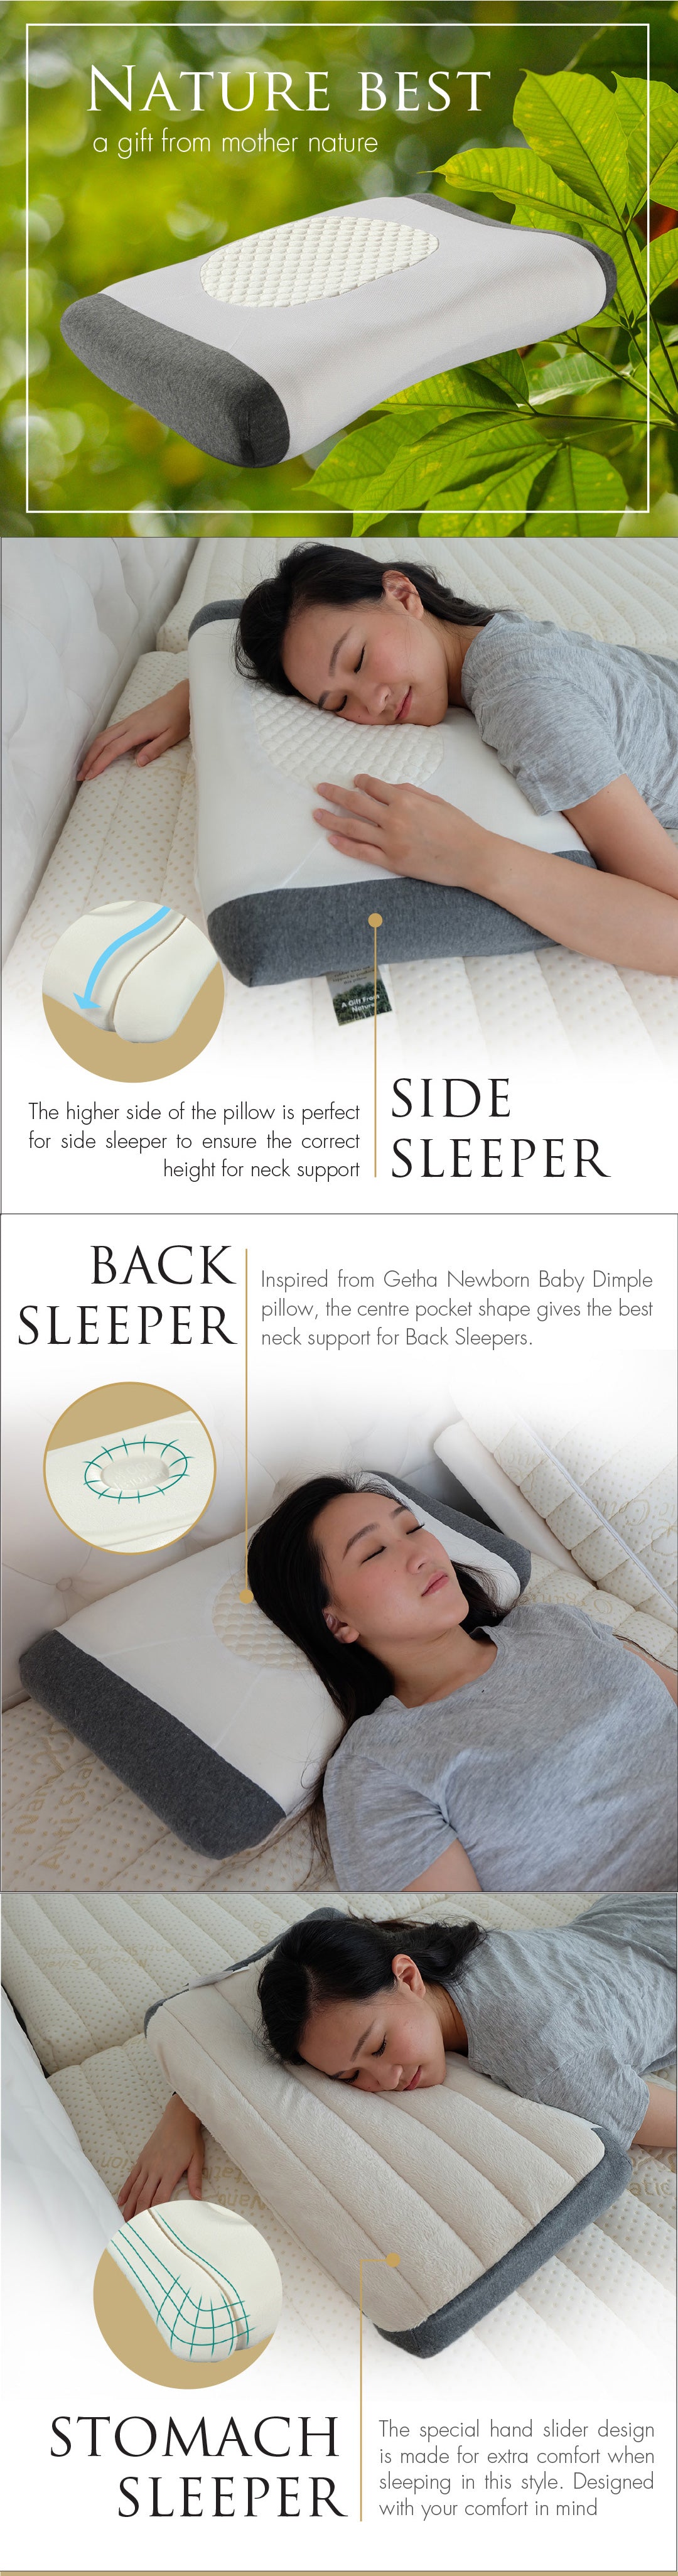 3d-auto-pillow-product-description